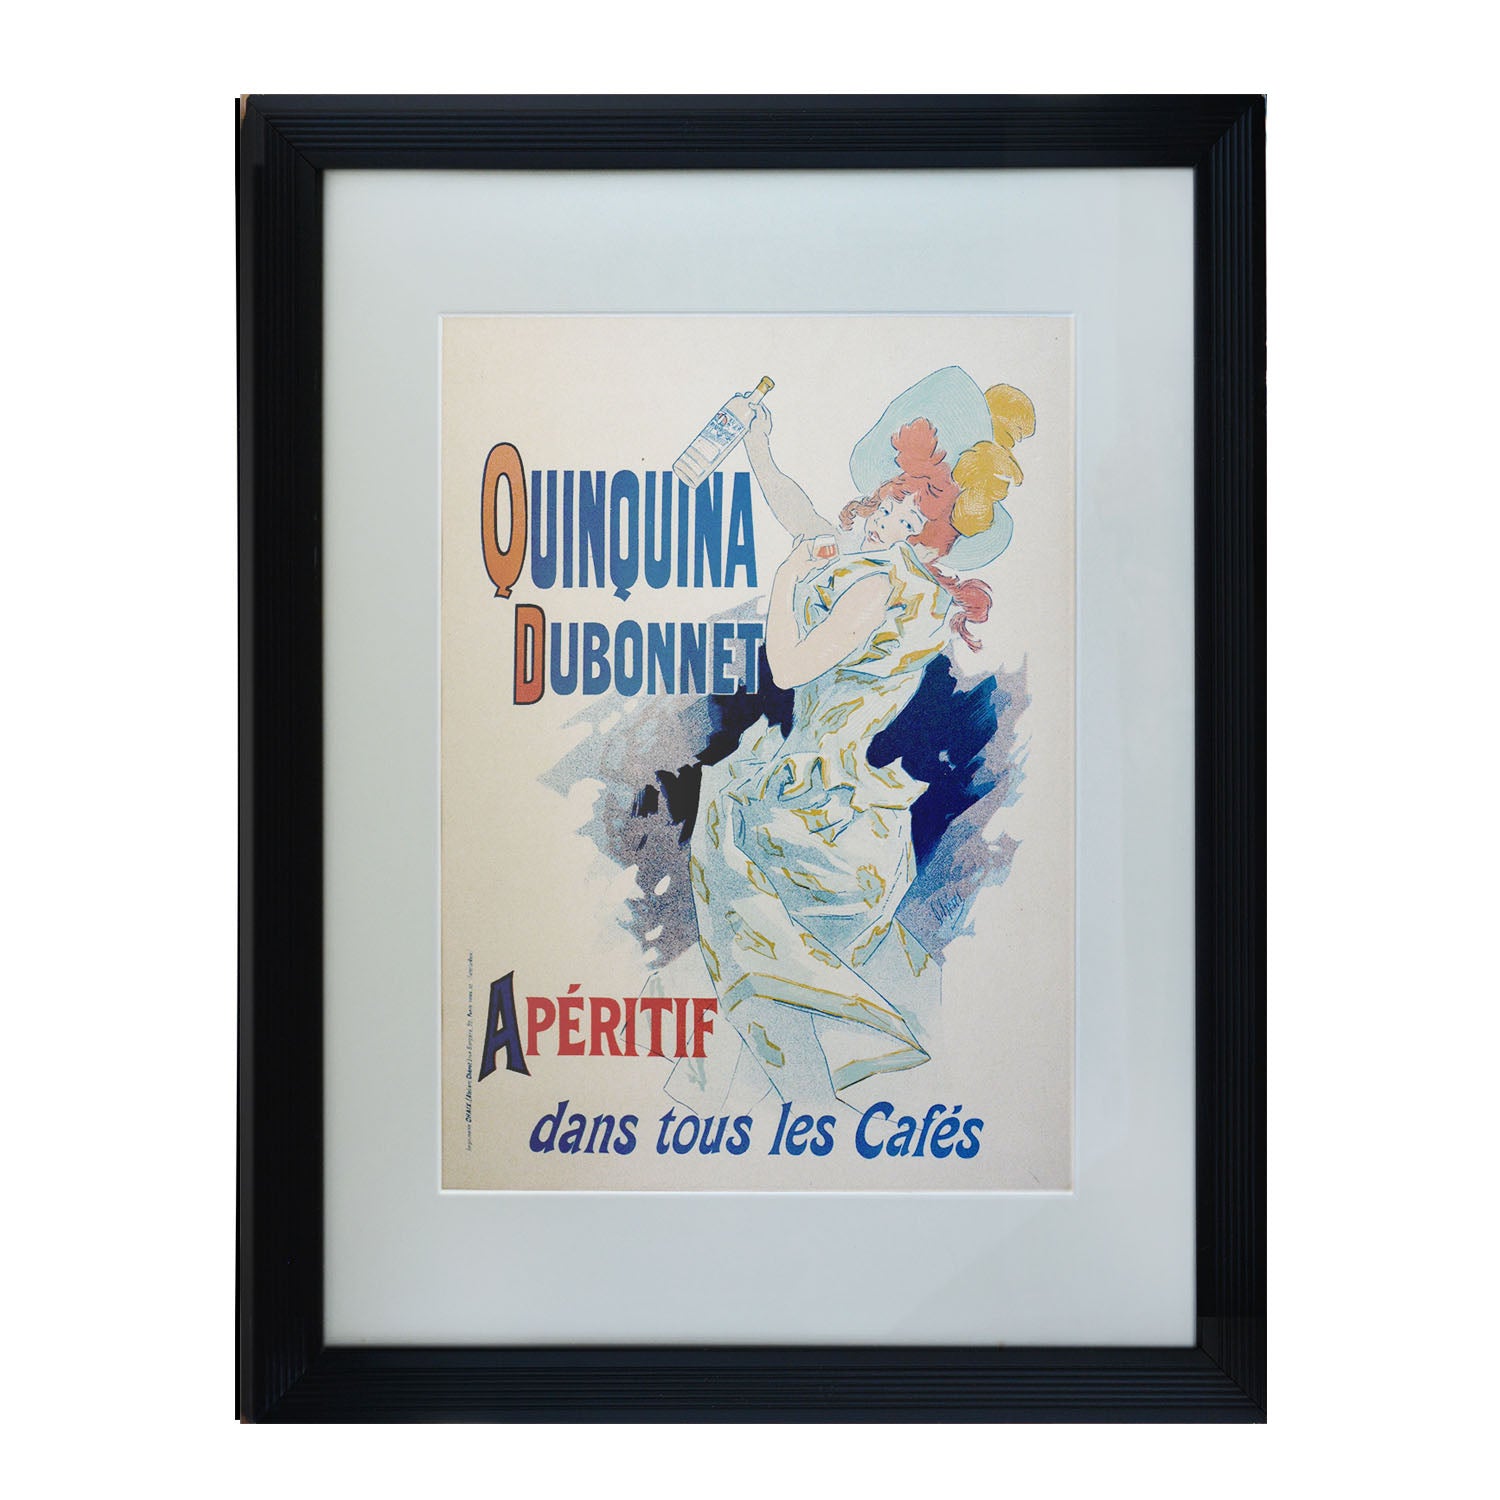 Original poster: “Quinquina Dubonnet, Les Maitres de l'Affiche" ("The Masters of the Poster"), designed by Jules Chéret, 1896. Design shows a well-dressed woman holding a bottle of Dubonnet.